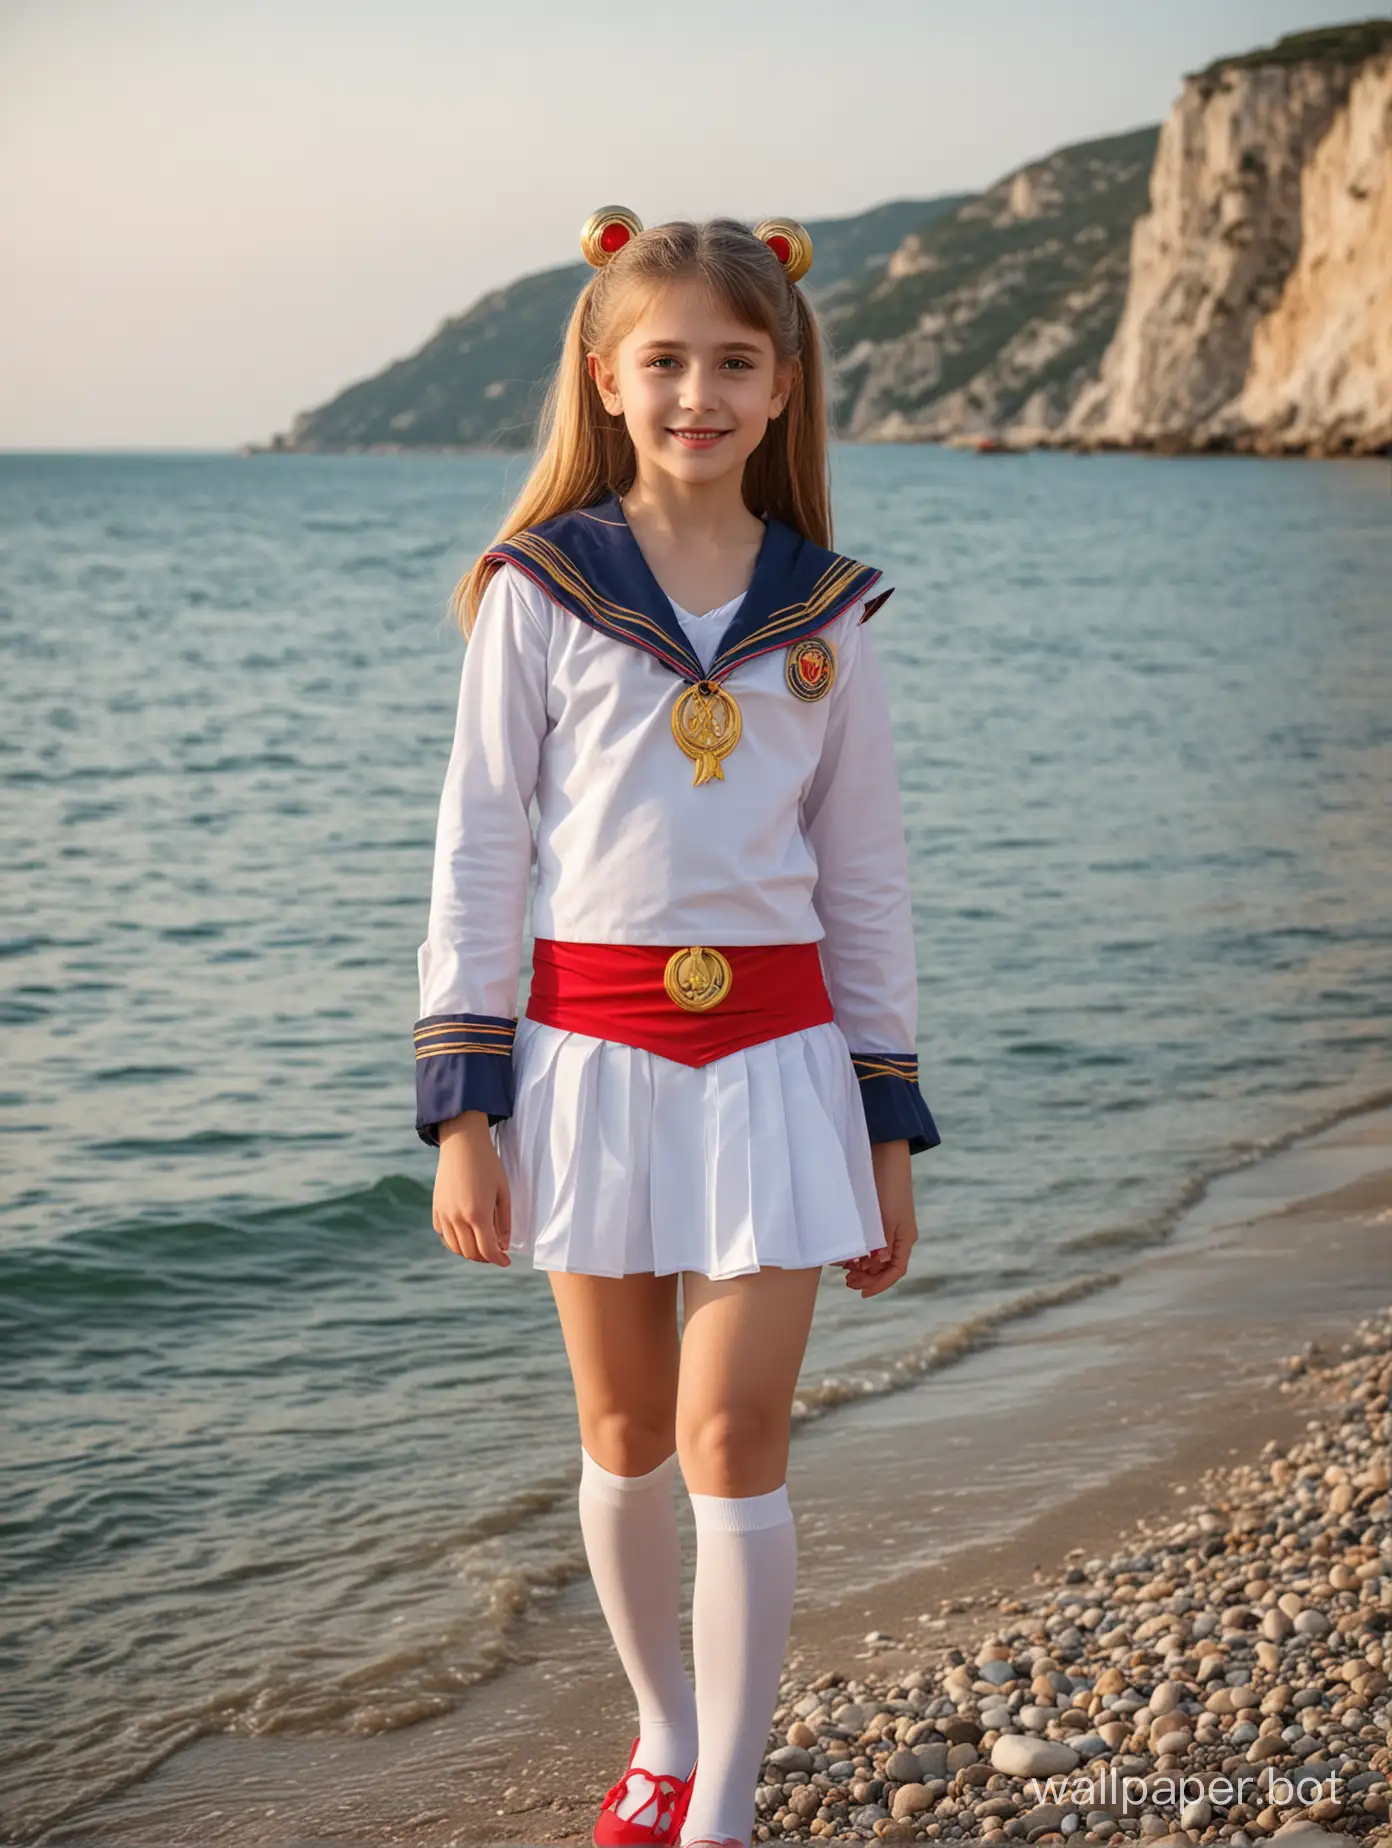 Красивая девочка 10 лет в Крыму у моря в костюме Сейлор Мун, в полный рост, дети разного возраста вокруг, динамичные позы, позирует, улыбка